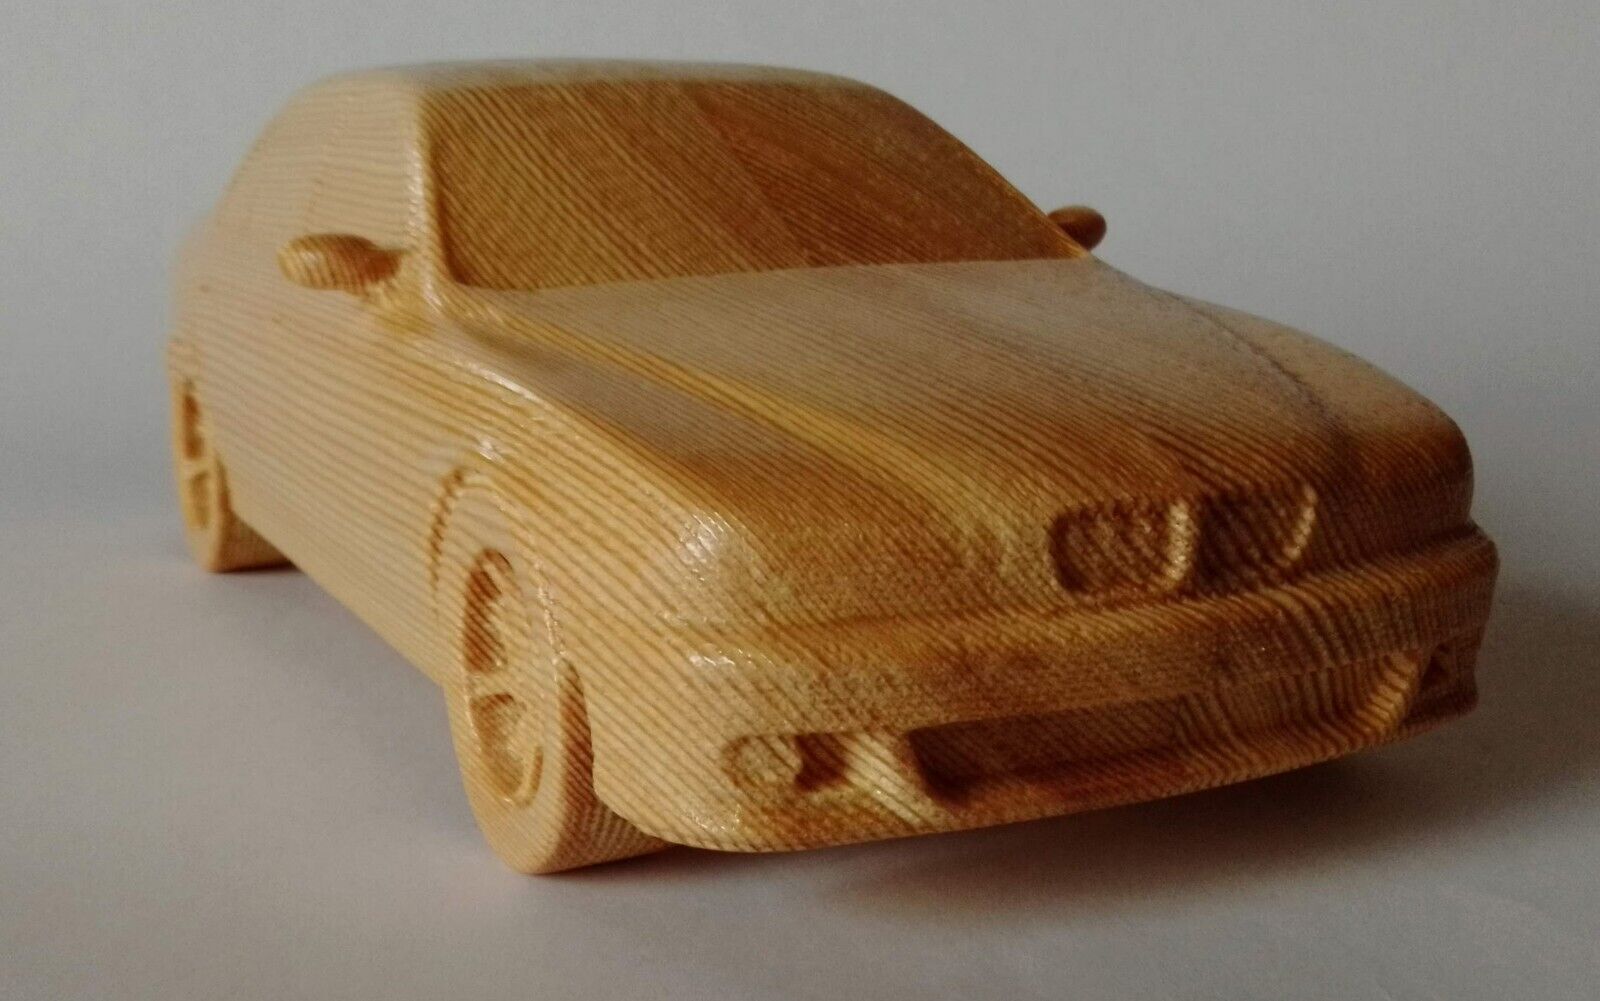 BMW M5 E39 - 1:16 Wood Scale Model Car Replica Oldtimer Msport Edition Toy